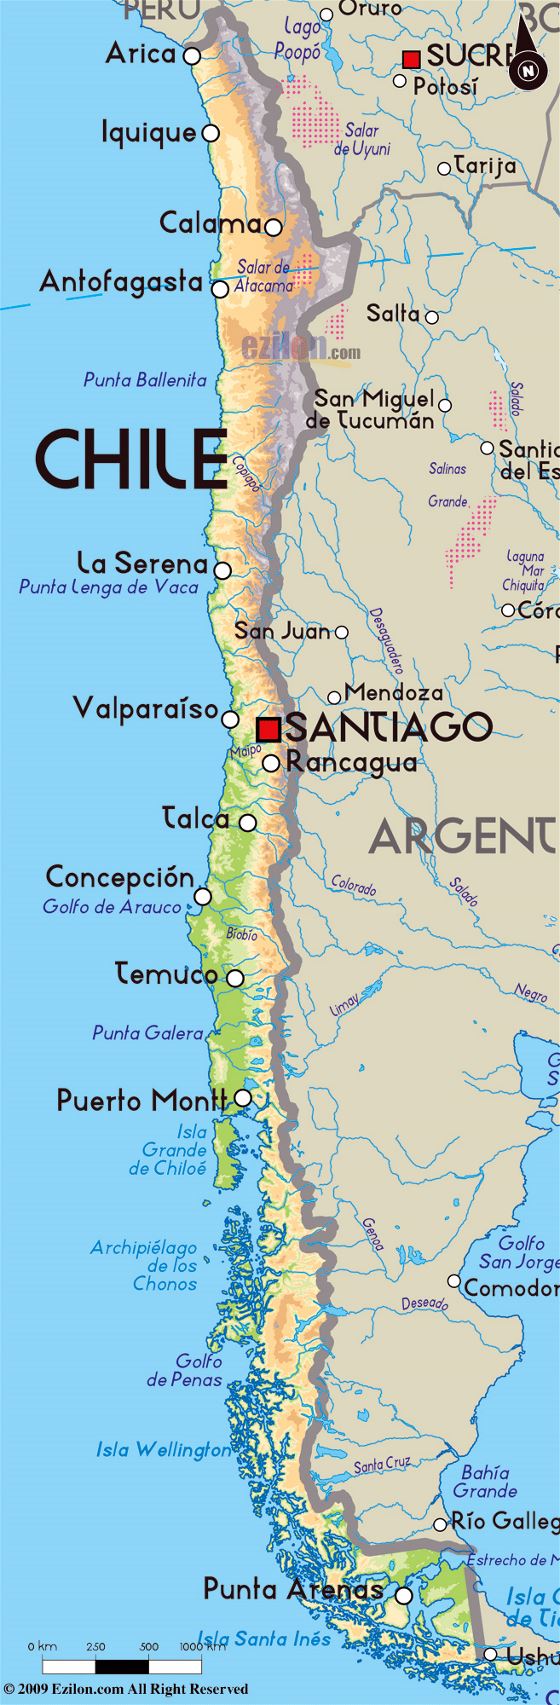 Detallado mapa físico de Chile con principales ciudades